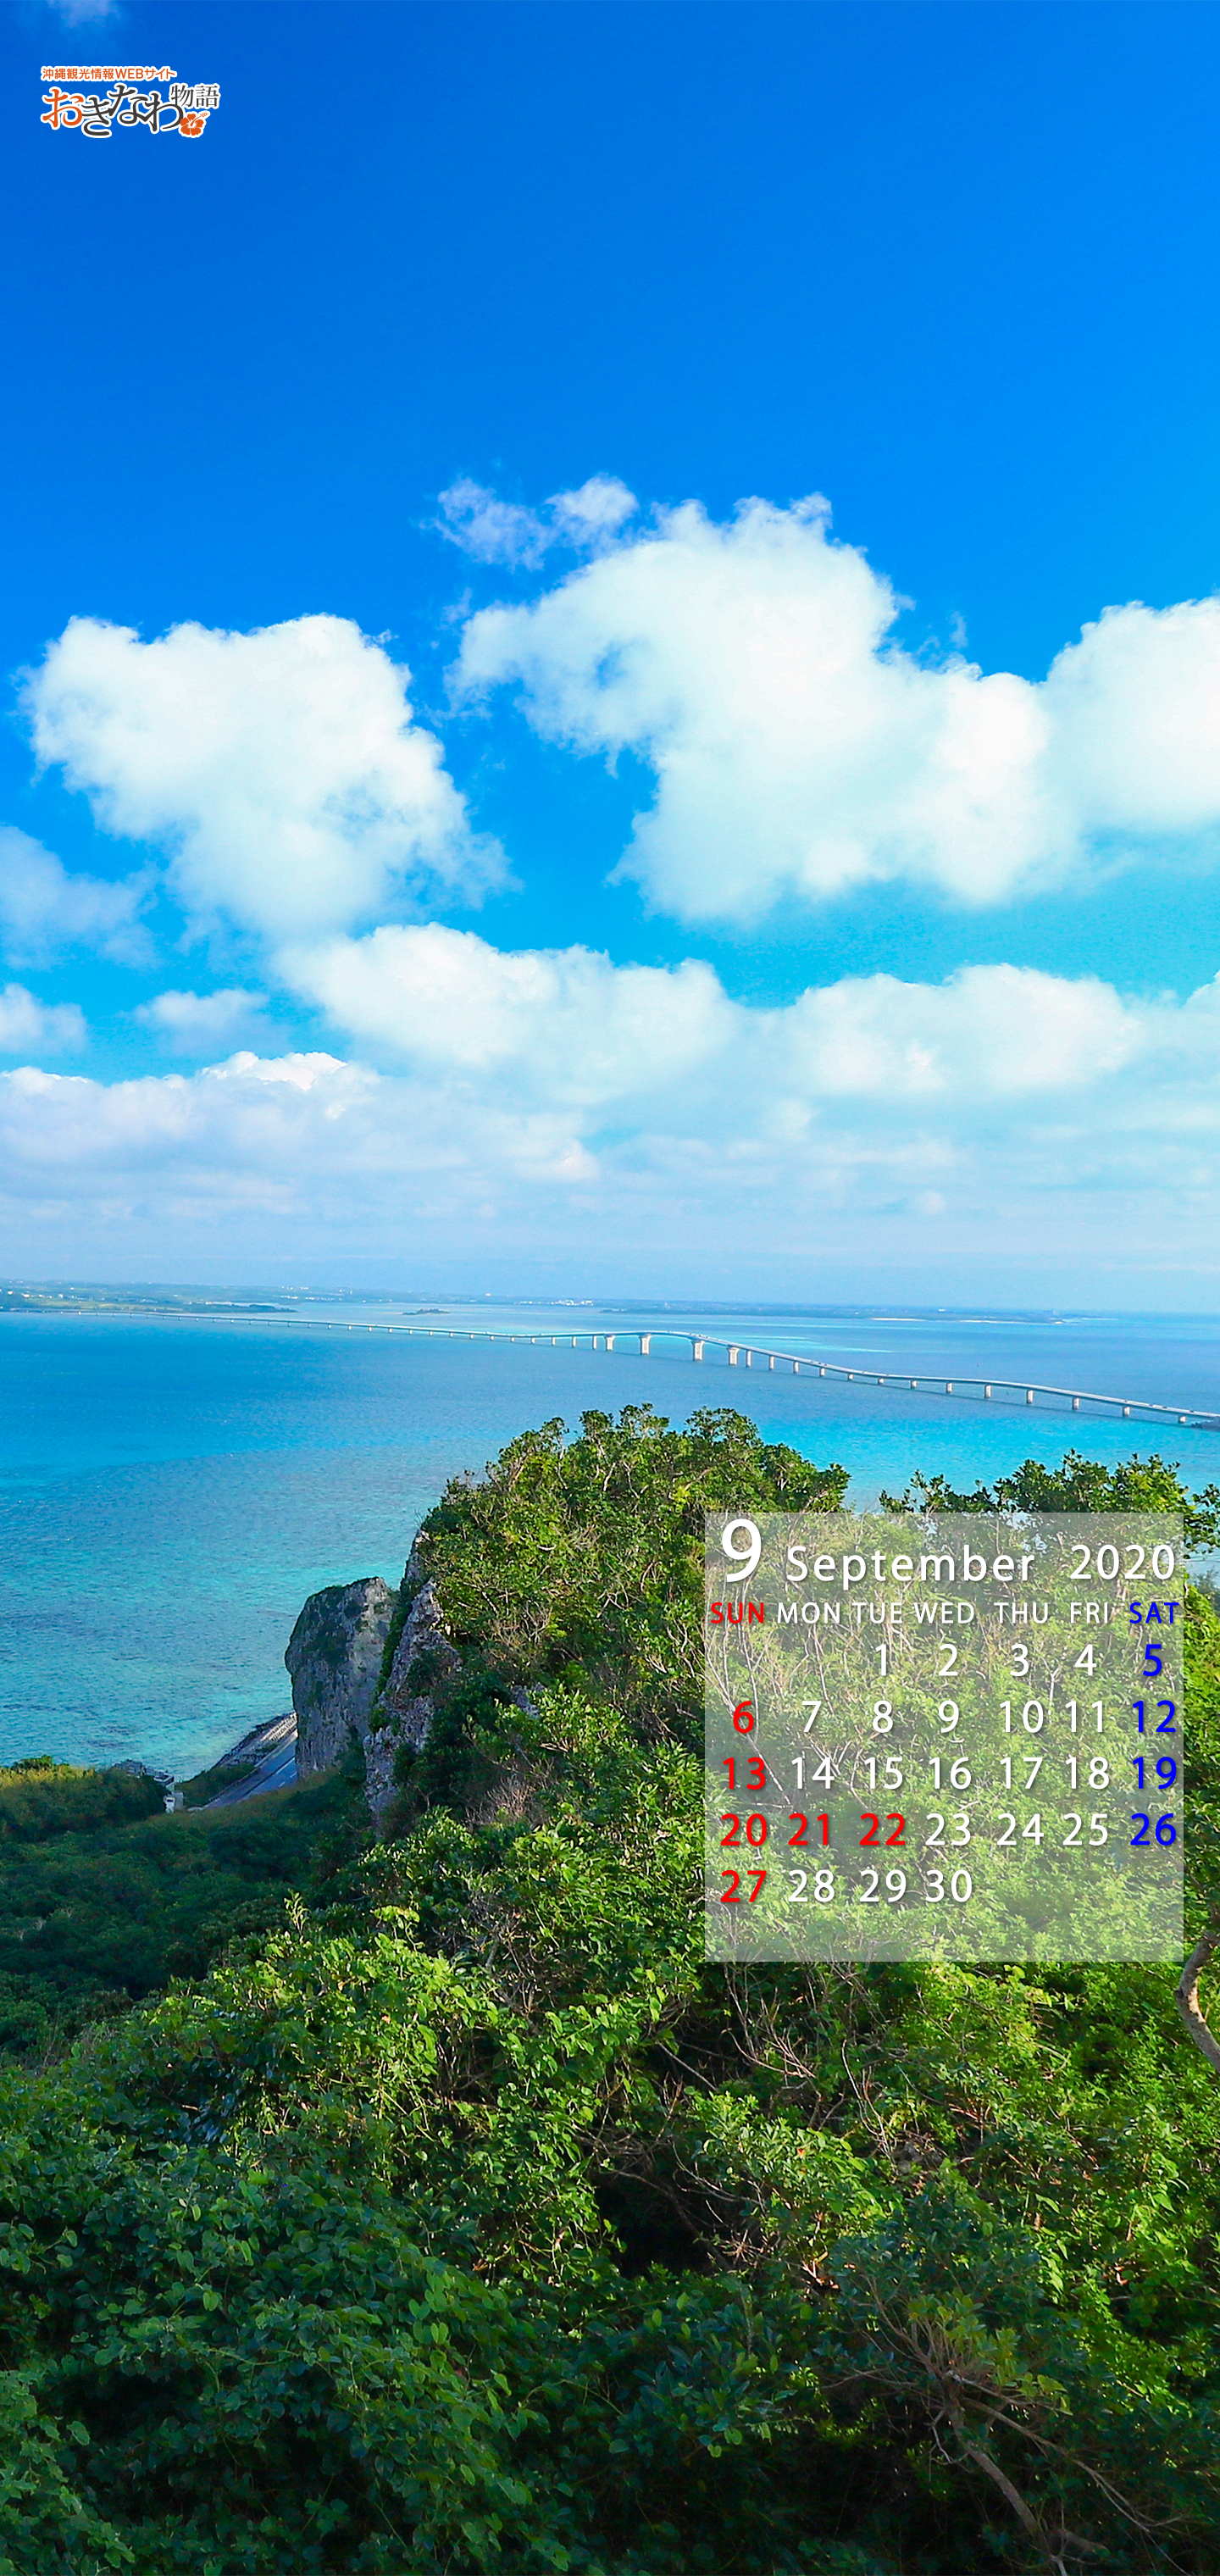 9月の壁紙カレンダー お知らせ トピックス 沖縄観光情報webサイト おきなわ物語